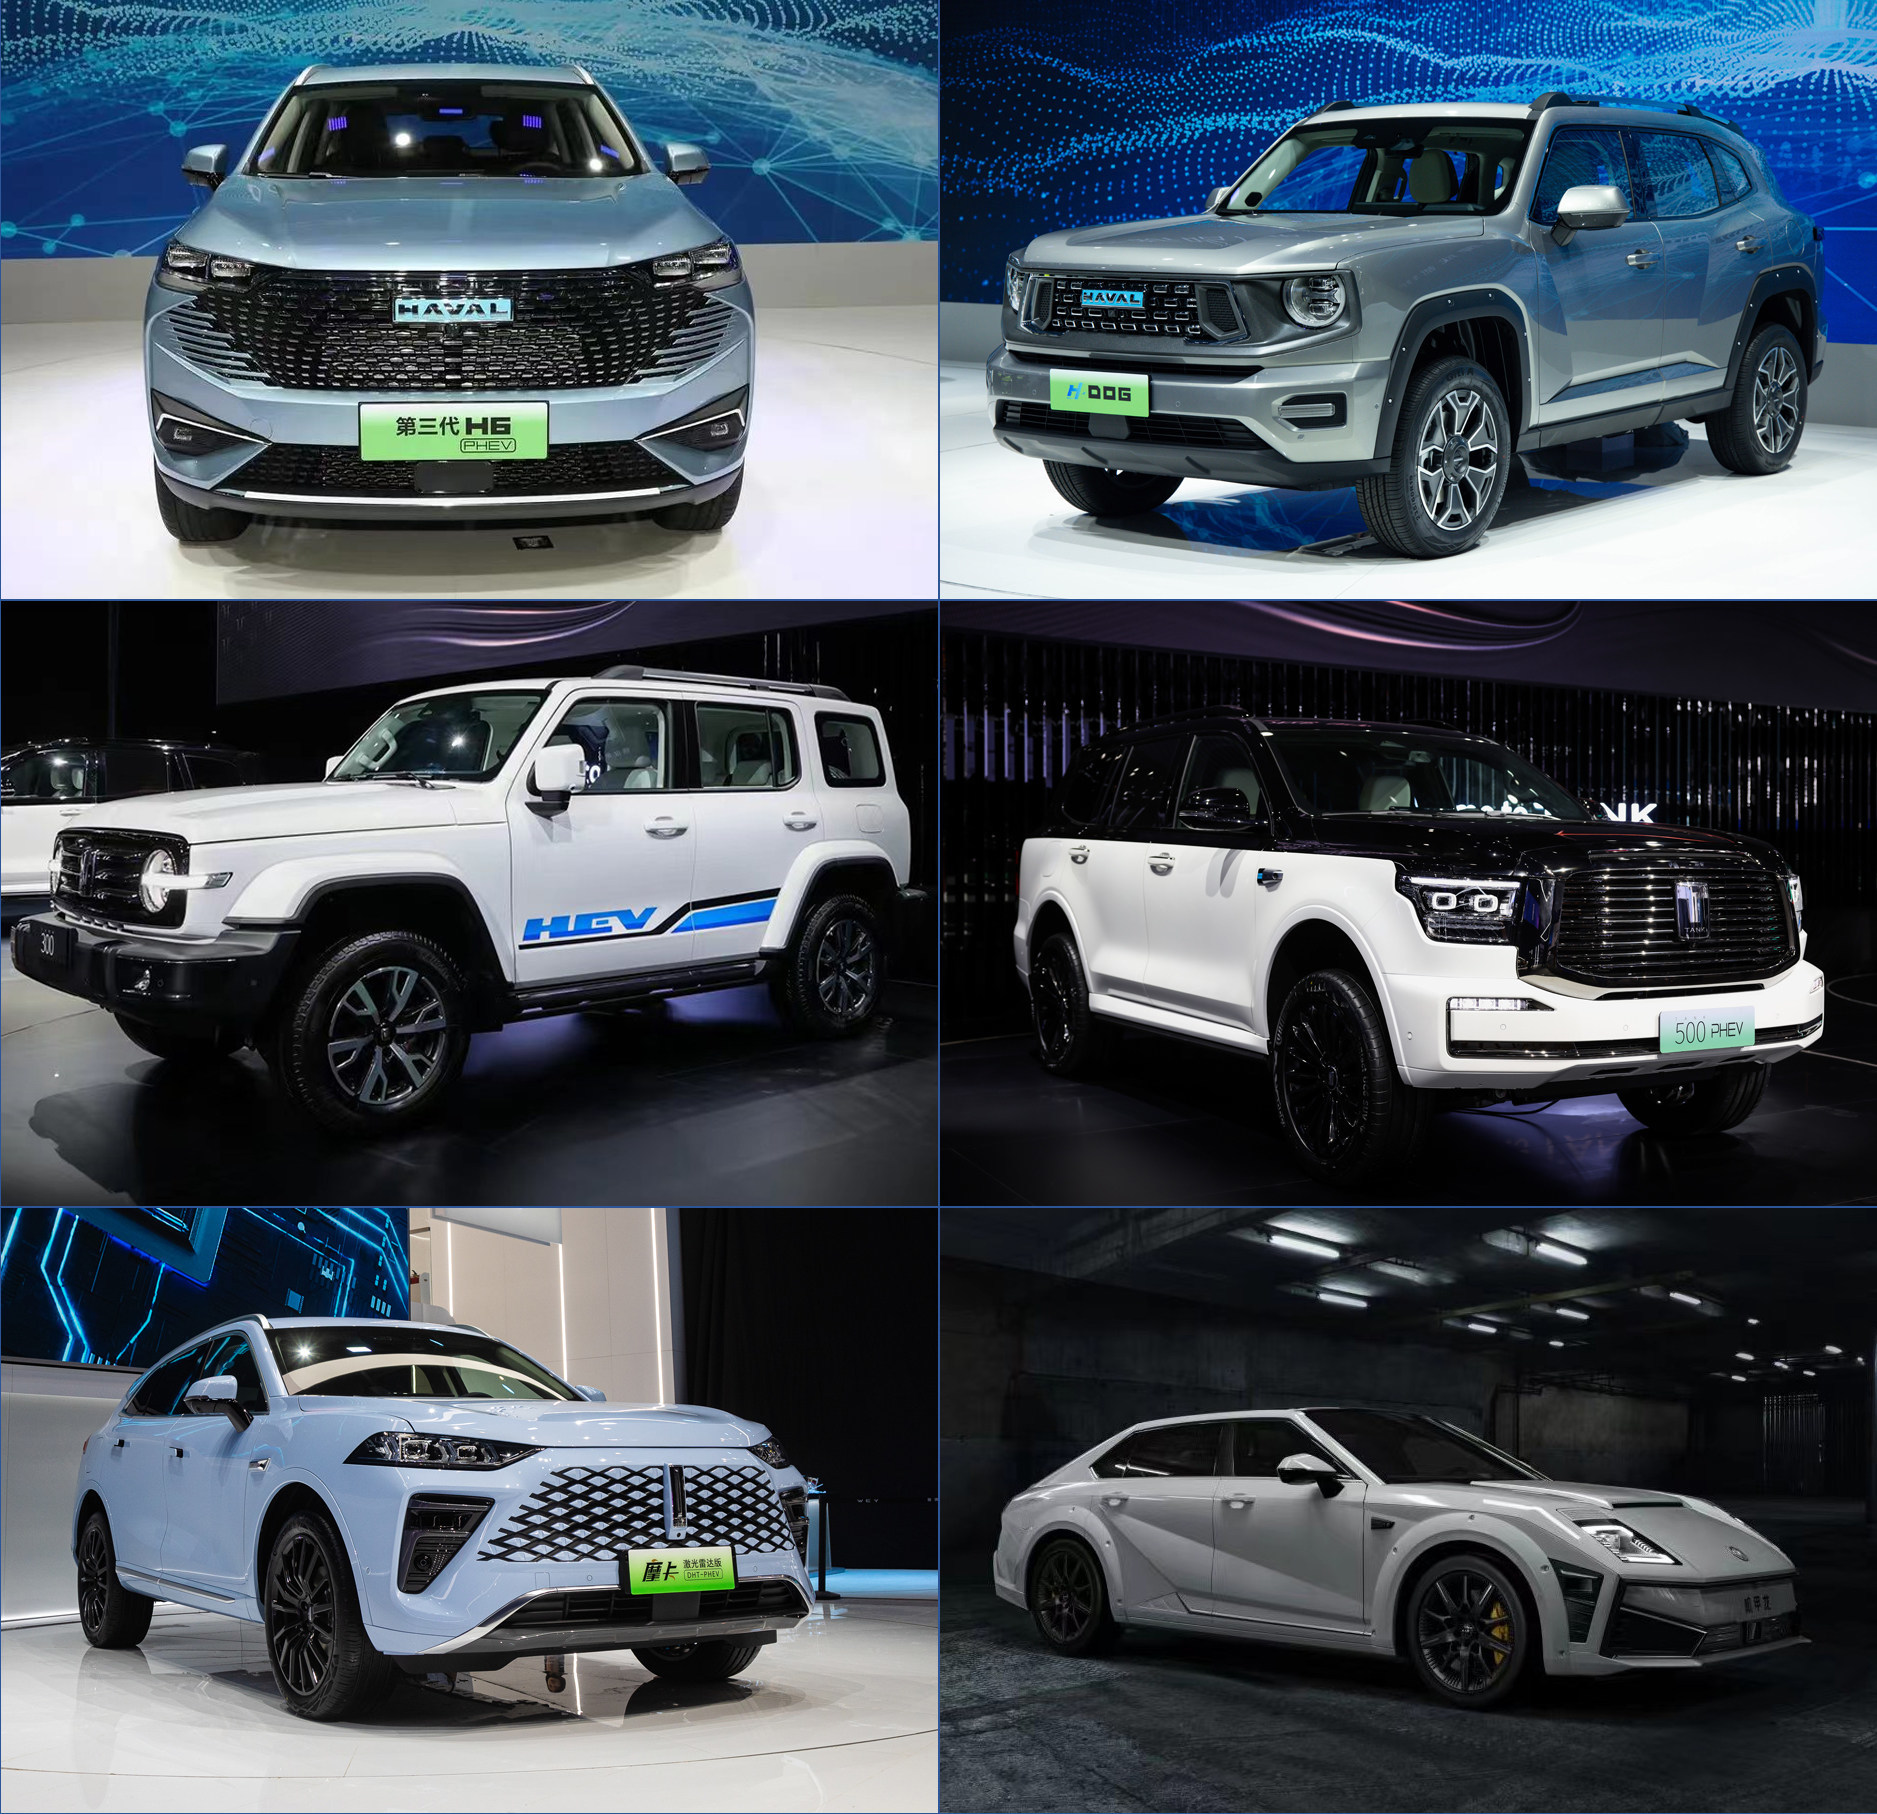 La nouvelle stratégie énergétique bat son plein : GWM dévoile plusieurs modèles fonctionnant aux nouvelles énergies au Salon de l'automobile de Chengdu 2022